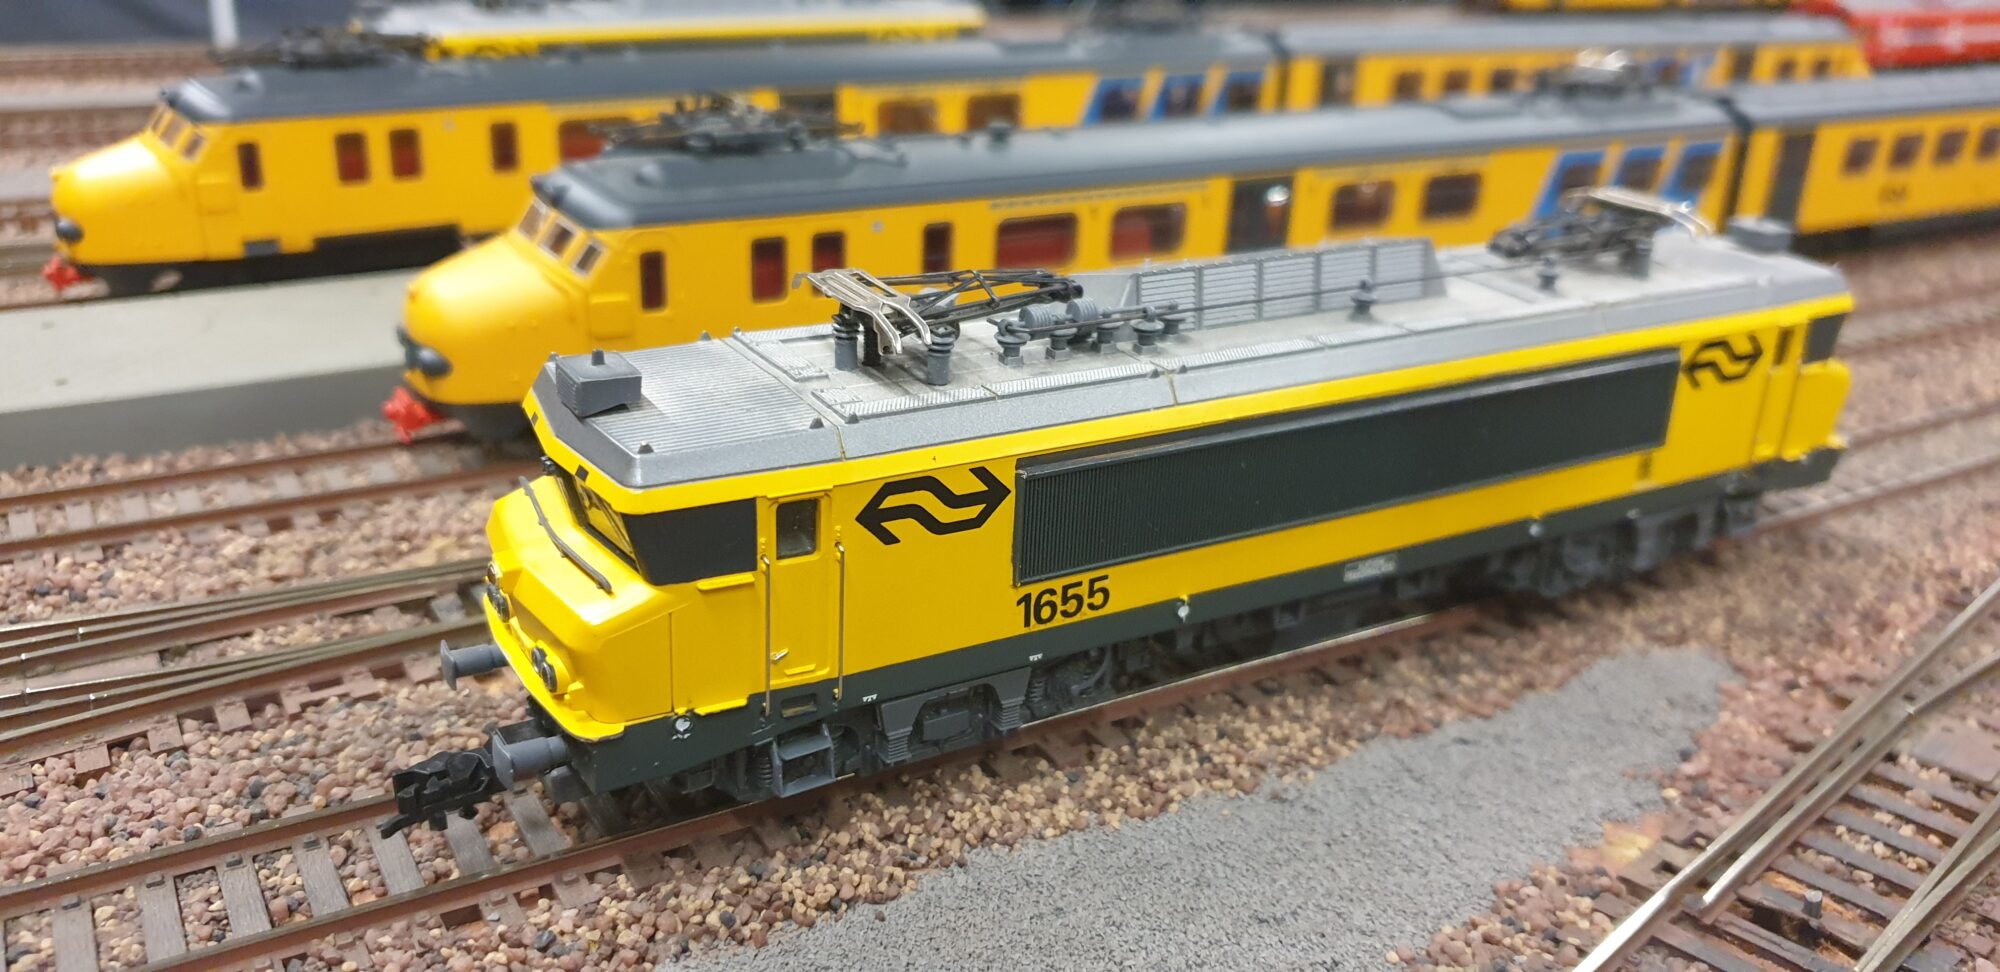 Modelspoorevenement in de Hanzehal Zutphen van stoomloc tot ICE trein